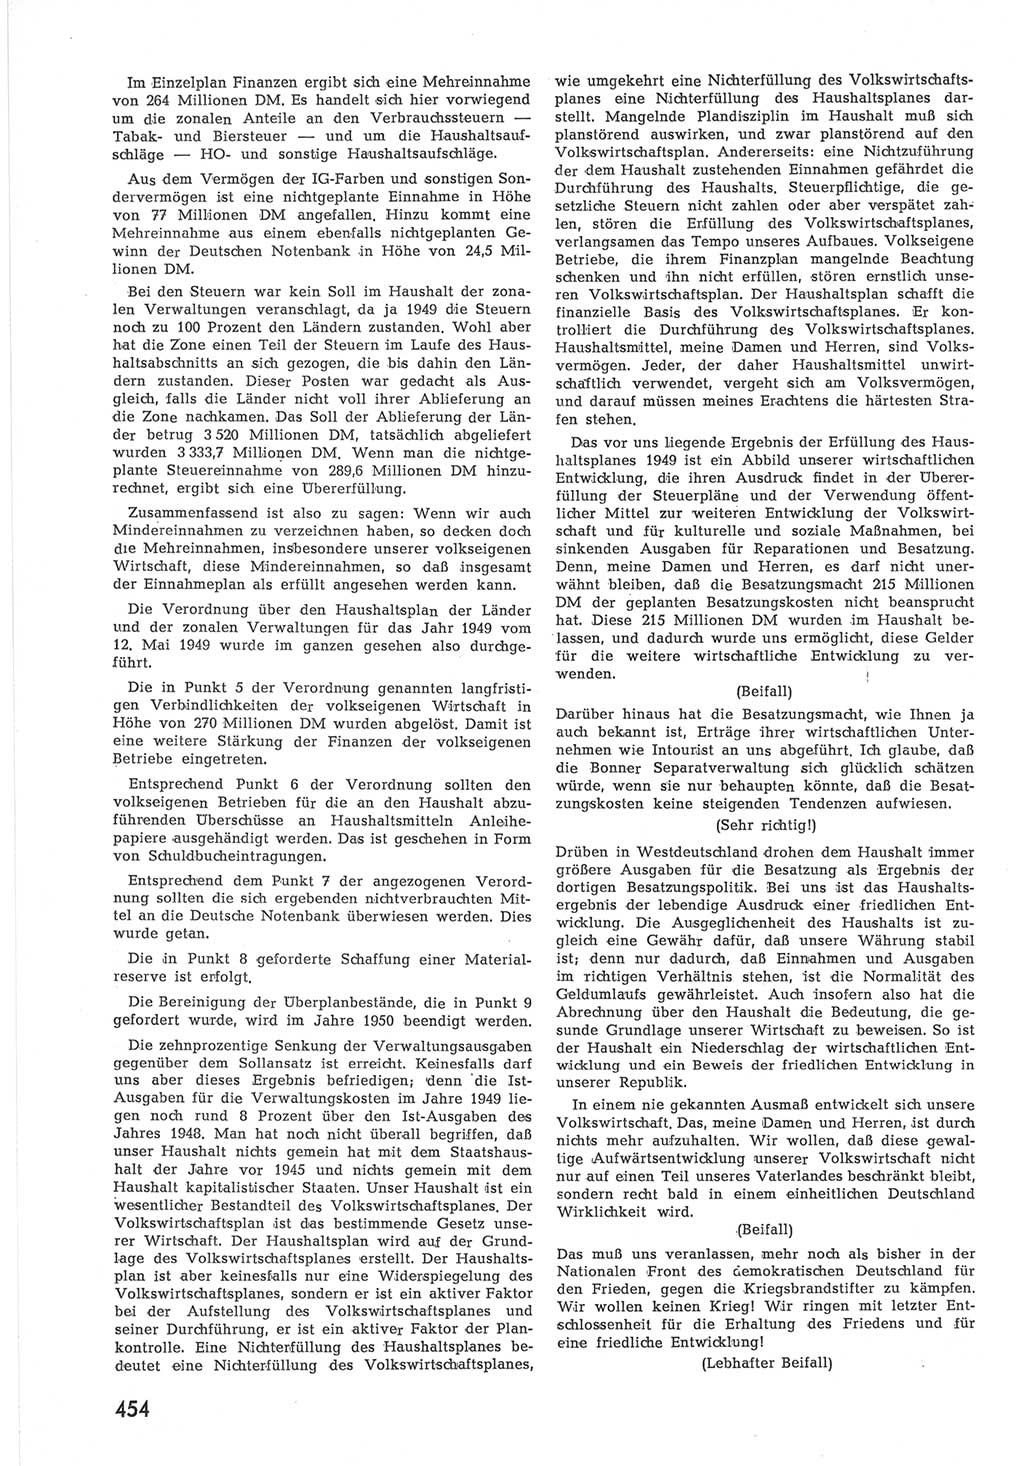 Provisorische Volkskammer (VK) der Deutschen Demokratischen Republik (DDR) 1949-1950, Dokument 472 (Prov. VK DDR 1949-1950, Dok. 472)